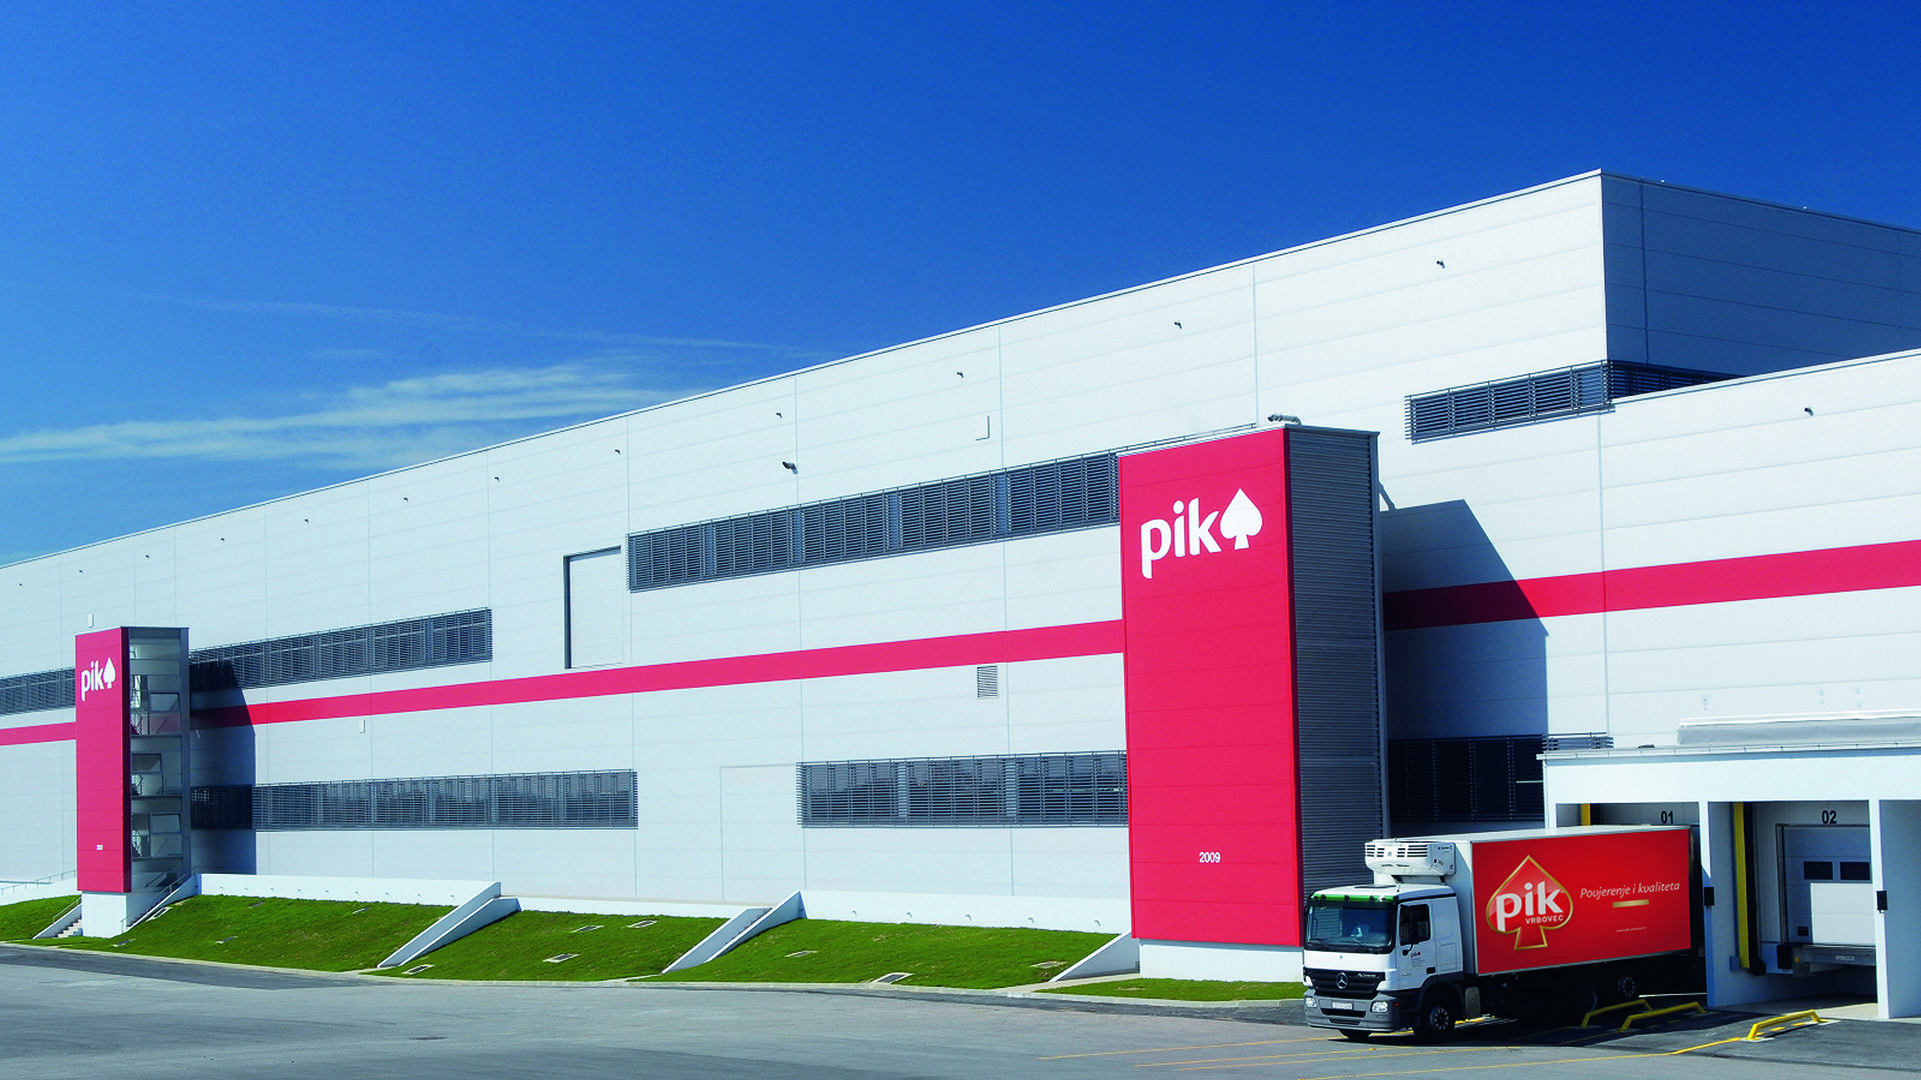 PIK Vrbovec danas ima najmoderniju tvornicu u regiji u koju su implementirana sva tehnološka dostignuća u proizvodnji